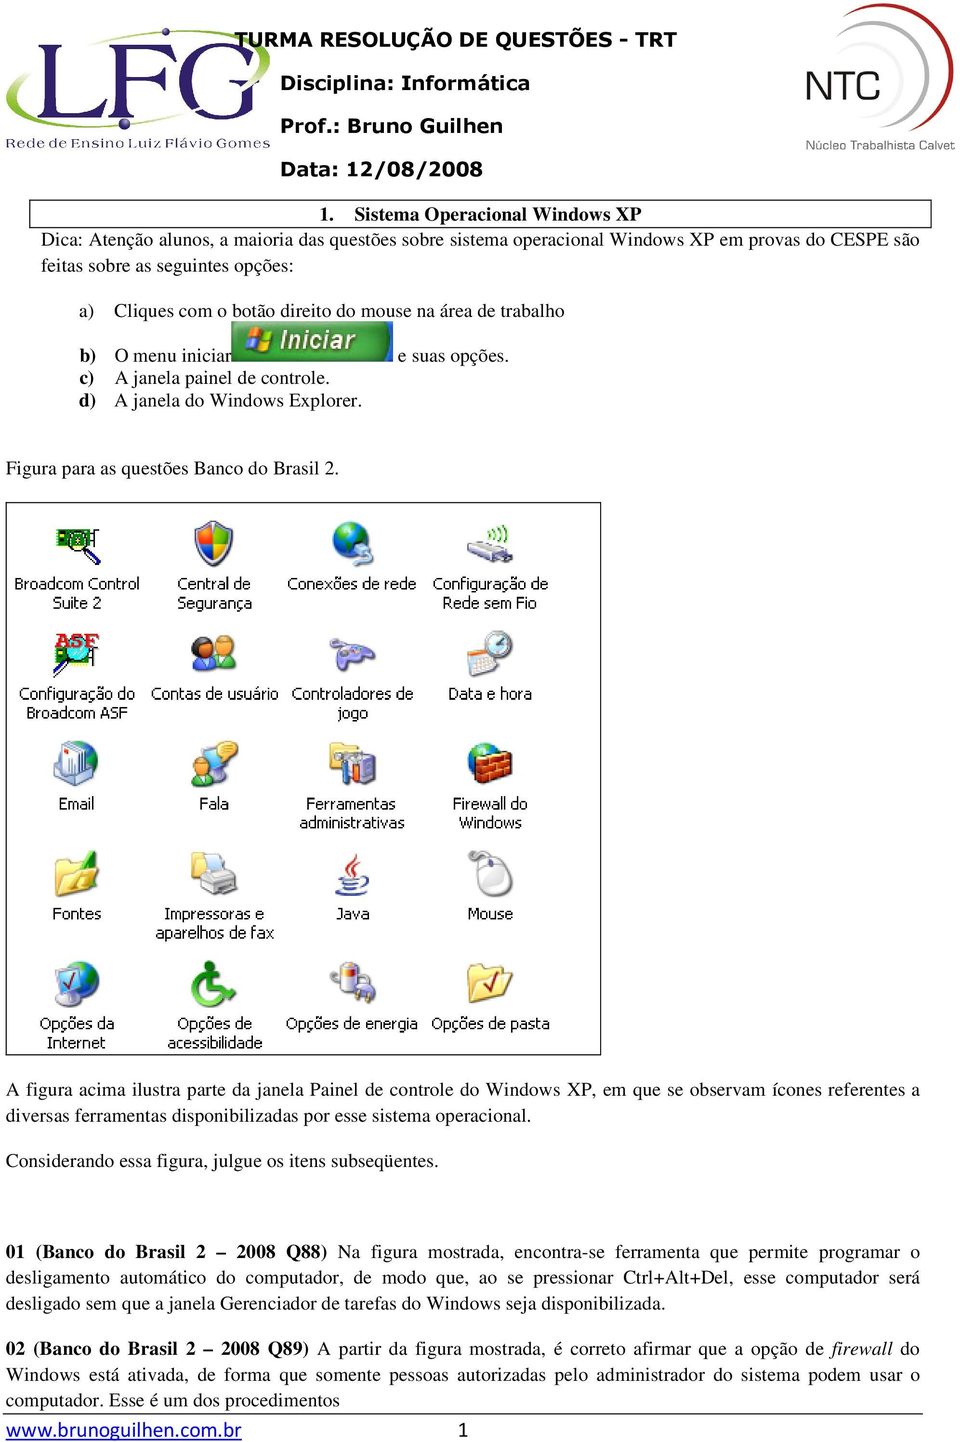 A figura acima ilustra parte da janela Painel de controle do Windows XP, em que se observam ícones referentes a diversas ferramentas disponibilizadas por esse sistema operacional.